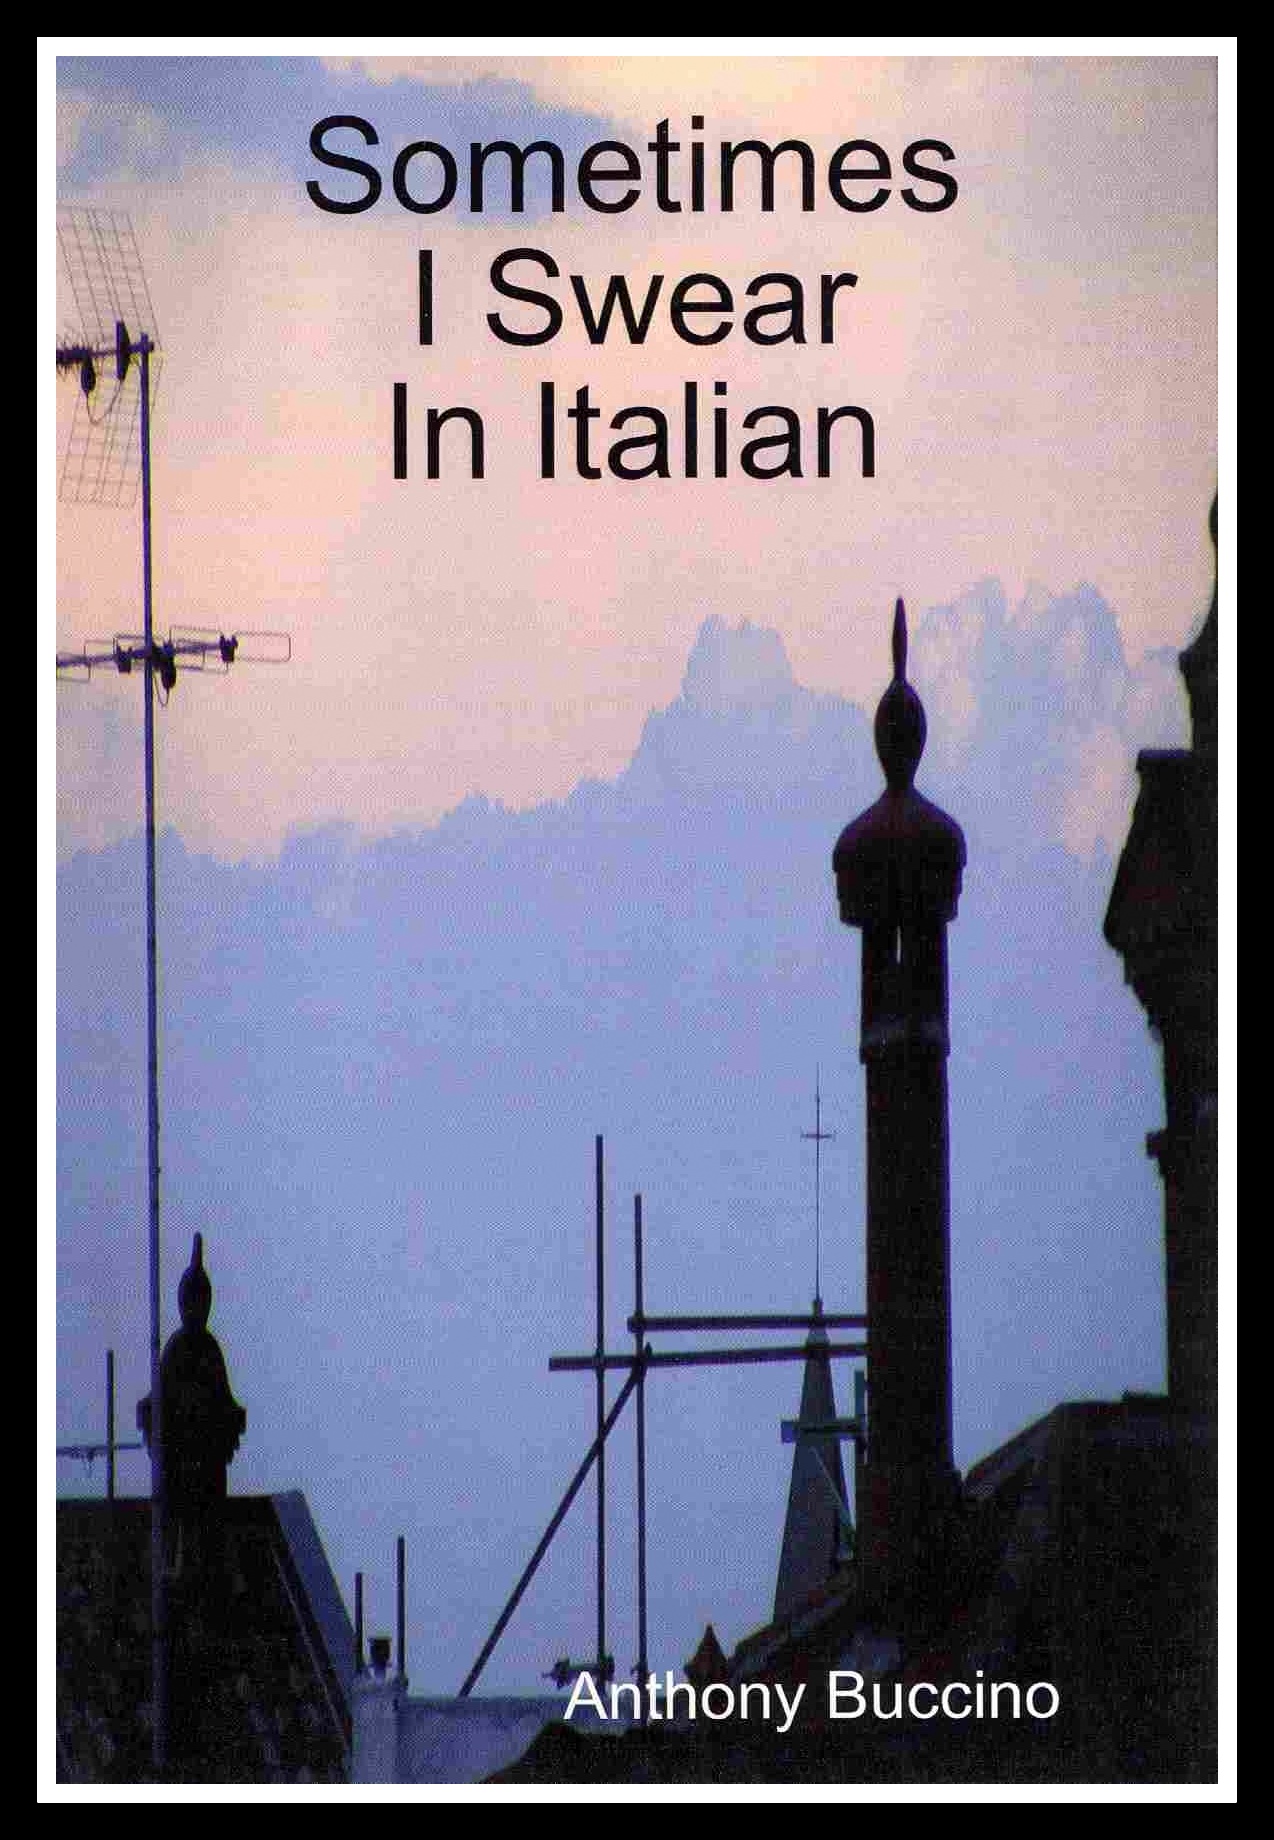 Sometimes I Swear in Italian by Anthony Buccino